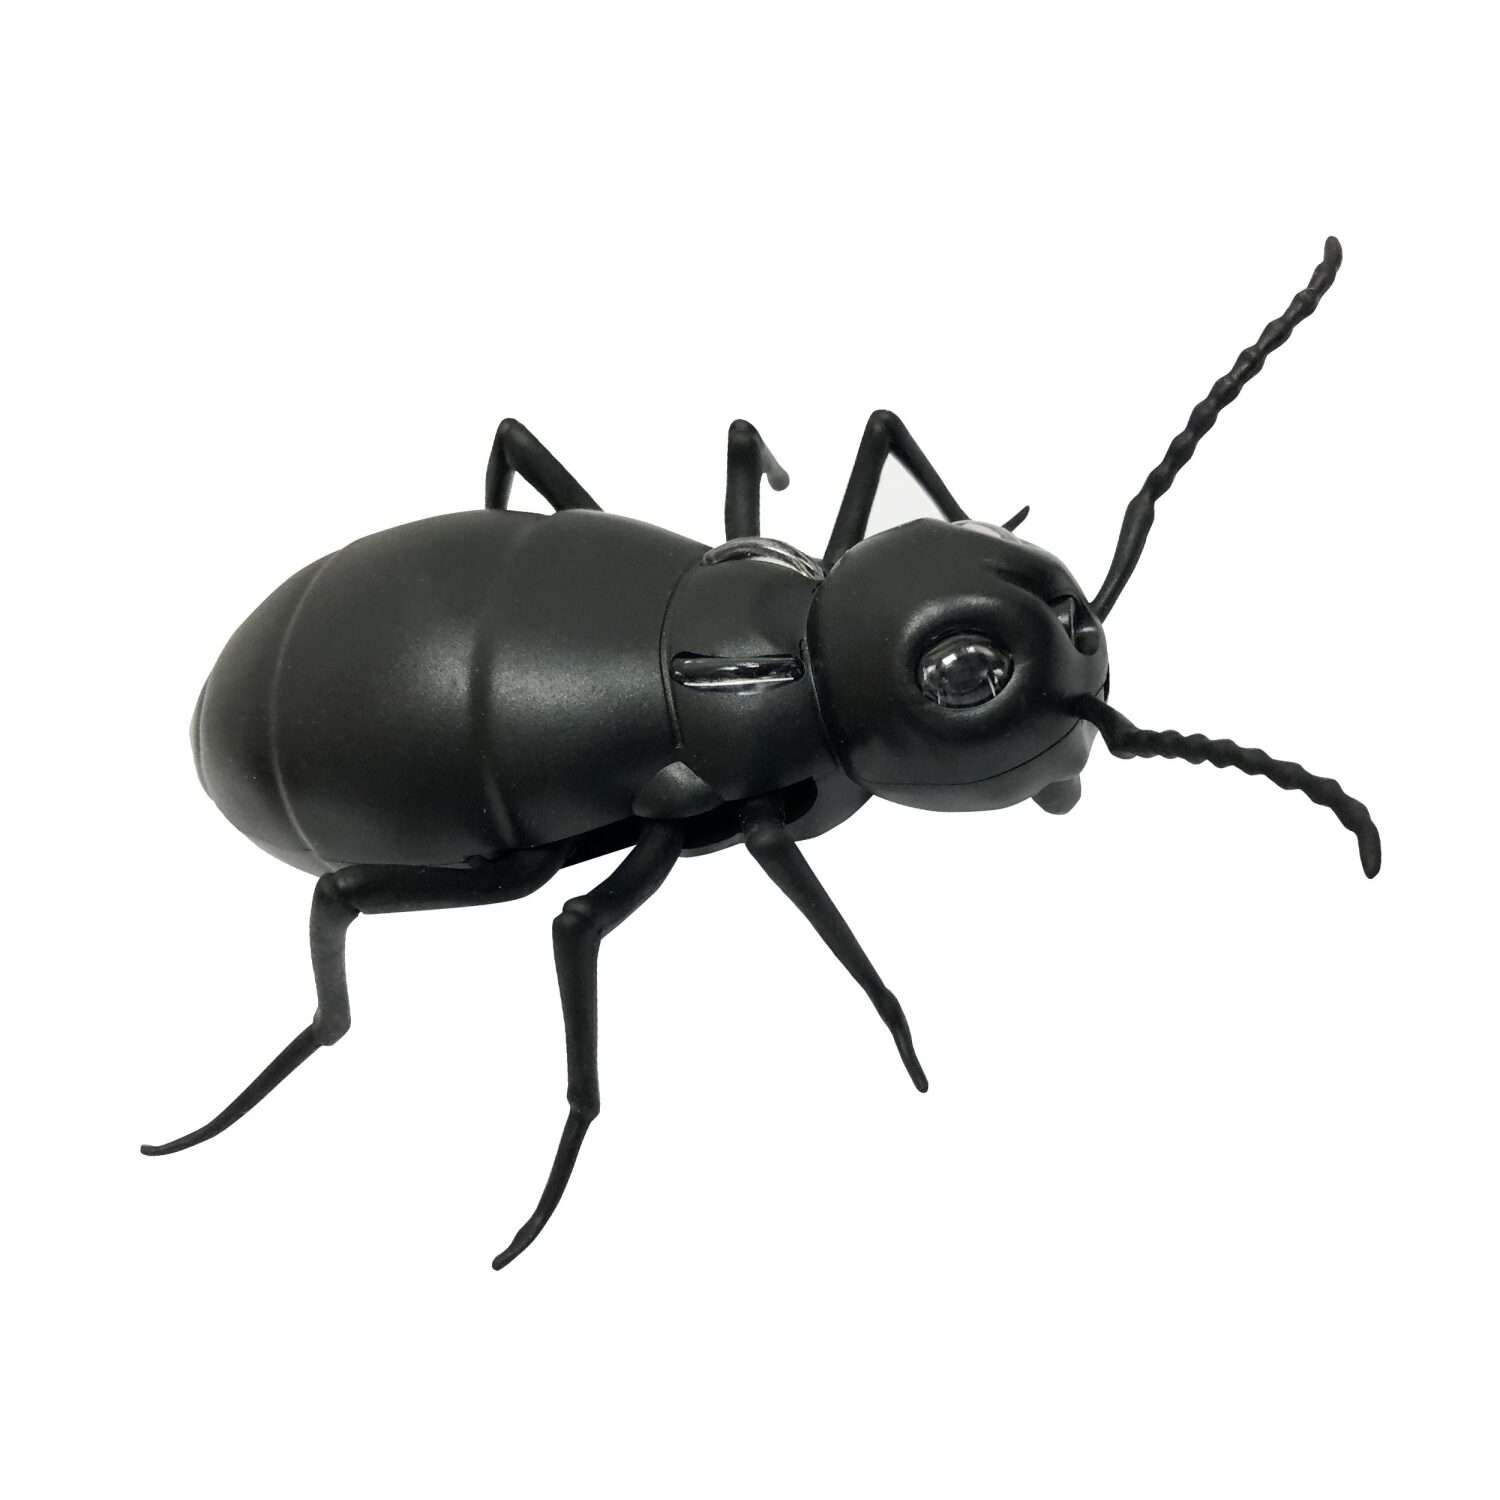 Интерактивная игрушка Robo Life Робо-муравей на ИК управлении со световыми эффектами - фото 4